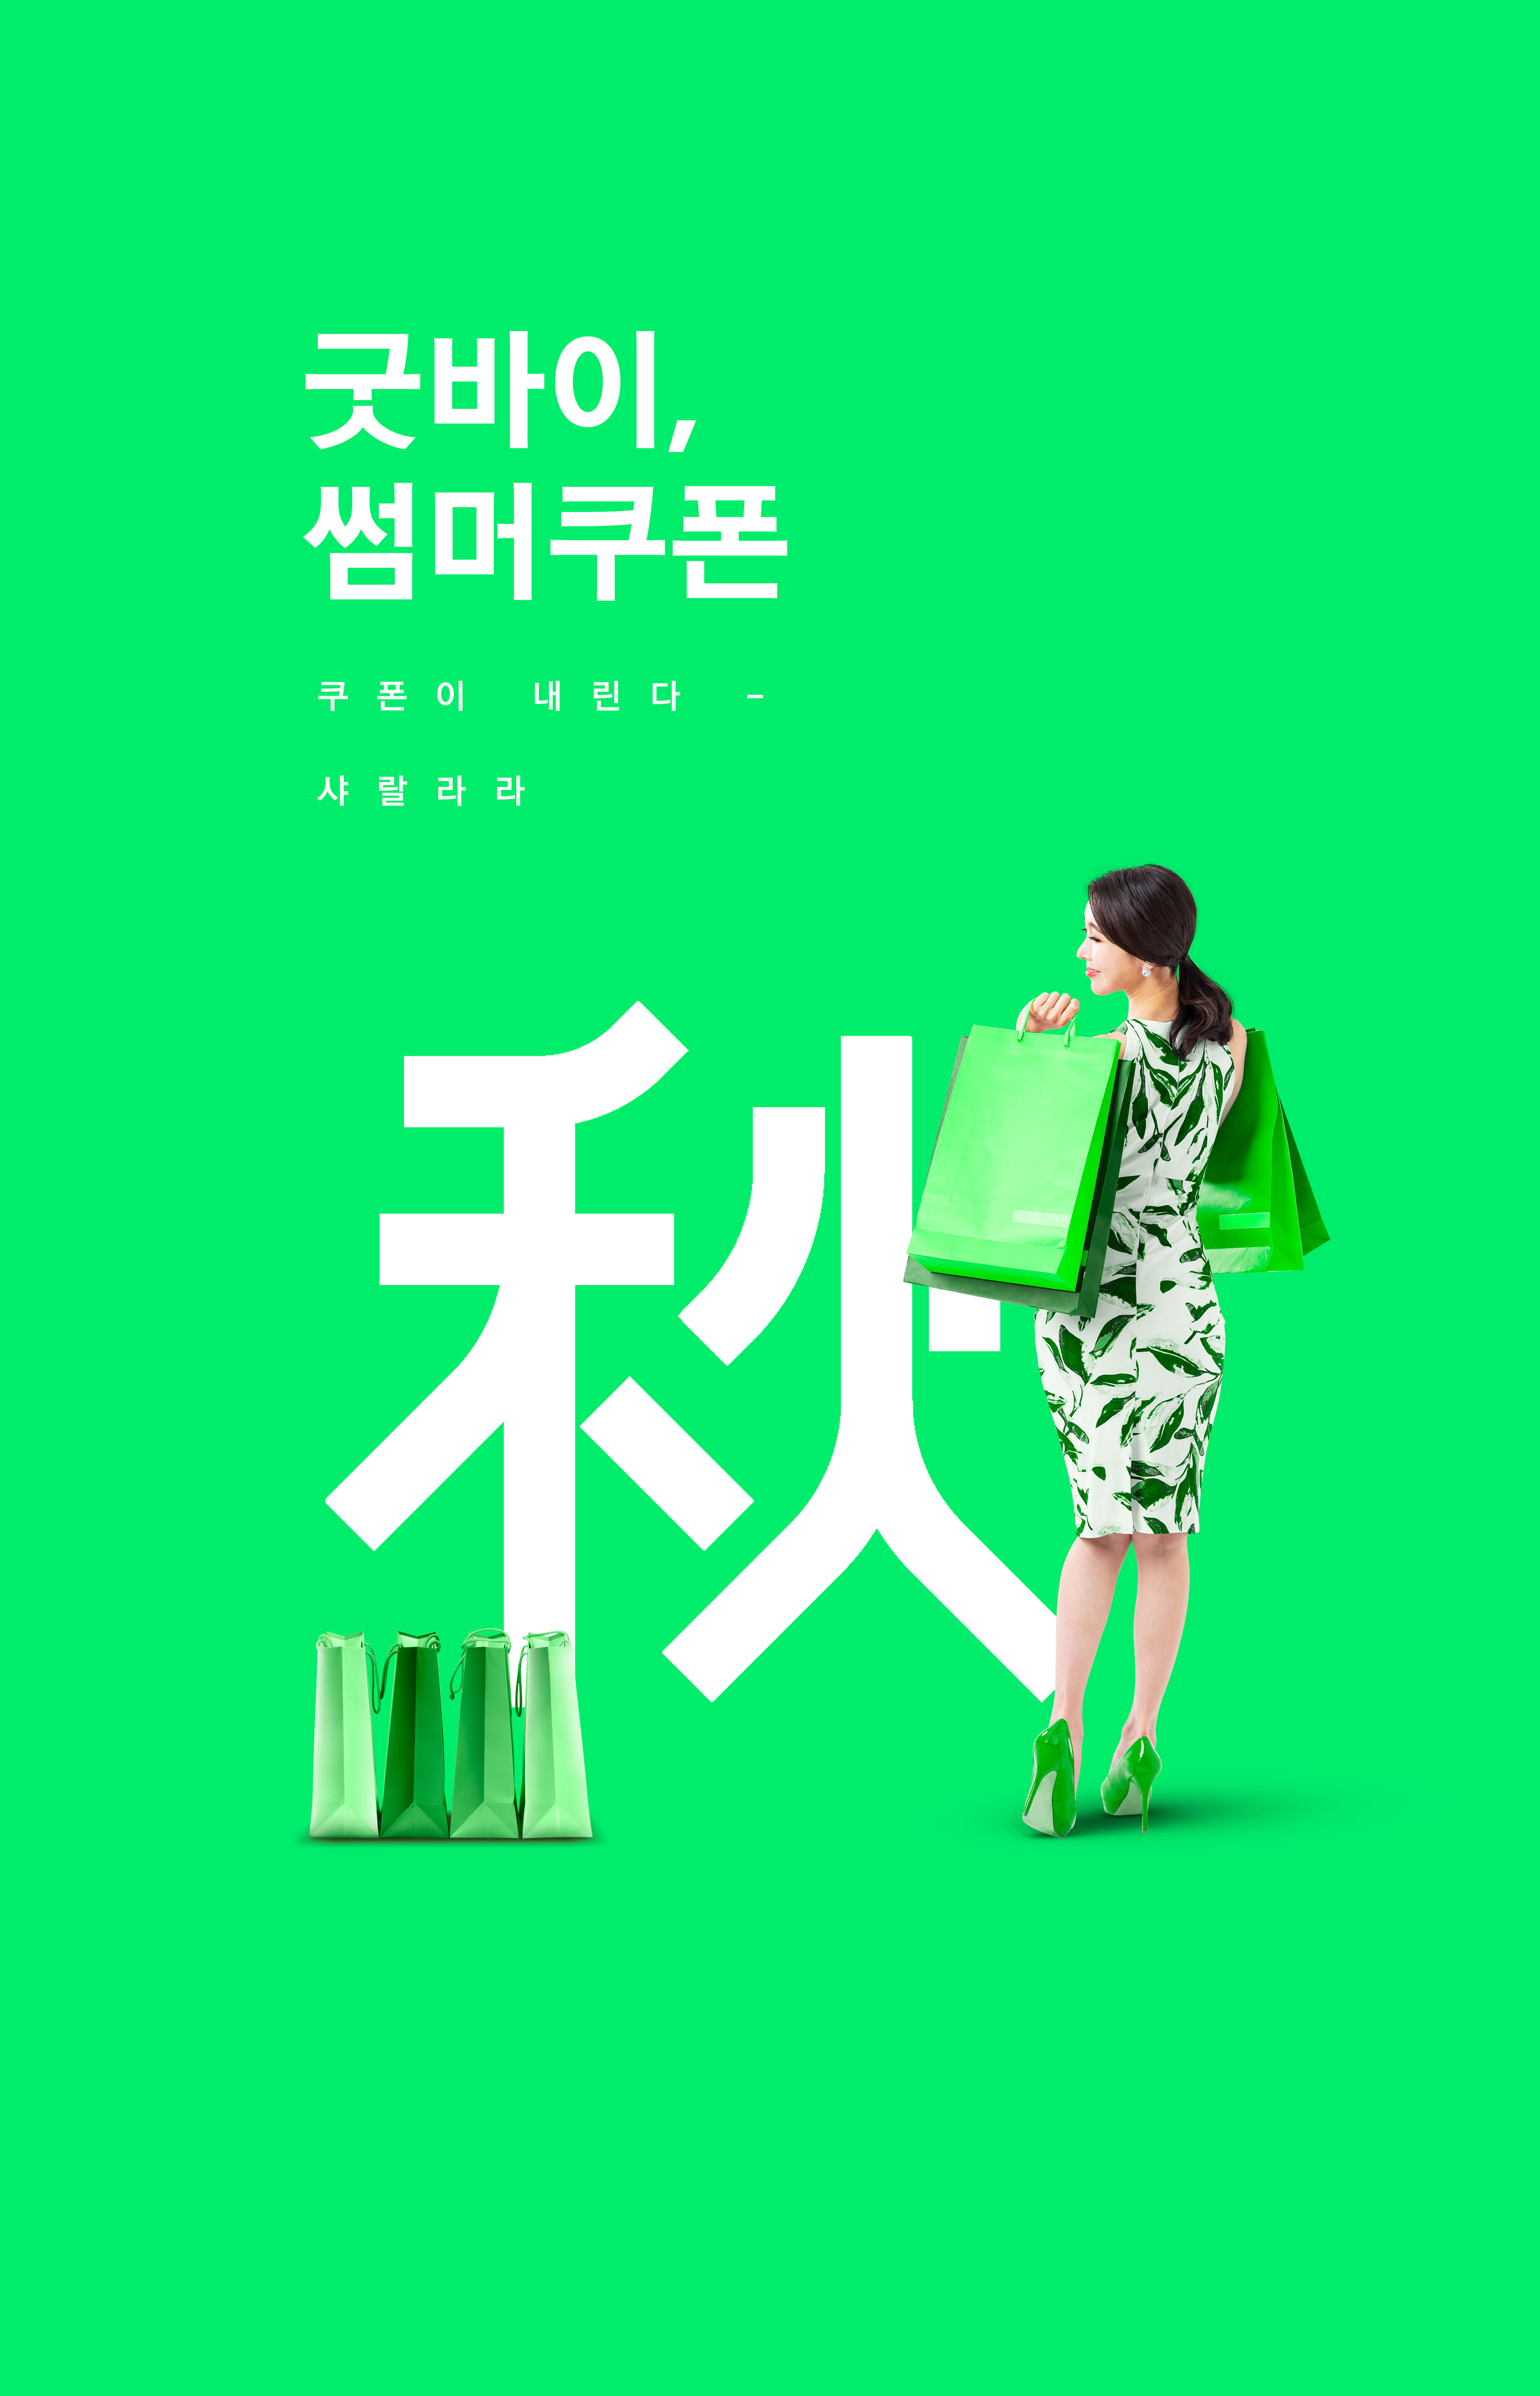 绿色系购物活动宣传海报设计模板